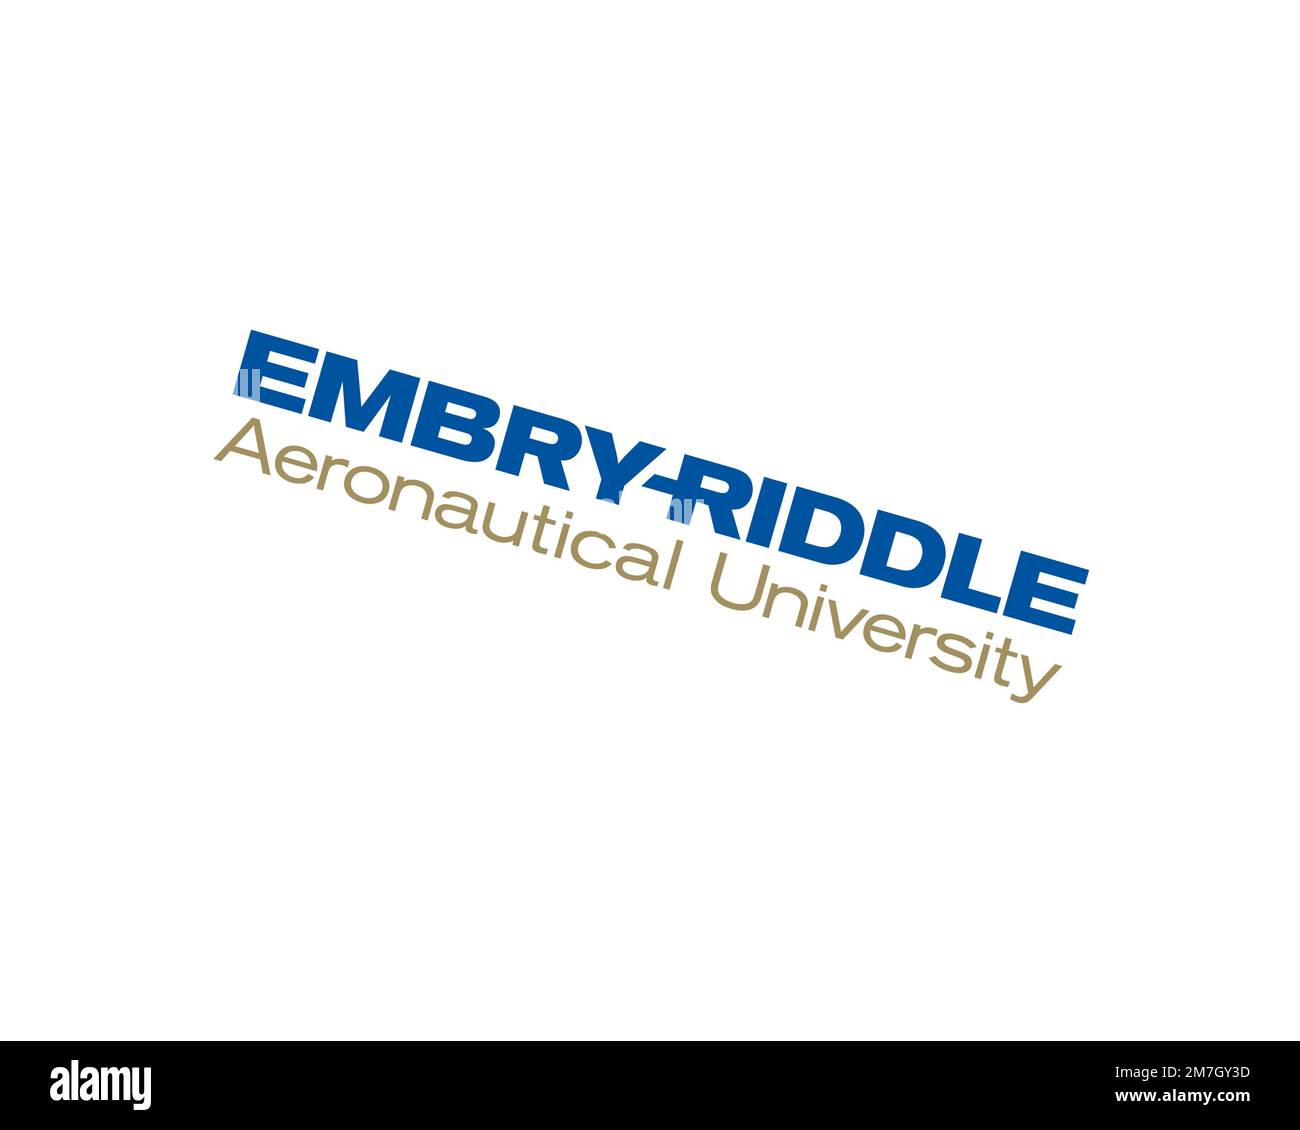 Embry-Riddle Aeronautical University, Rotated Logo, White Background B Stock Photo